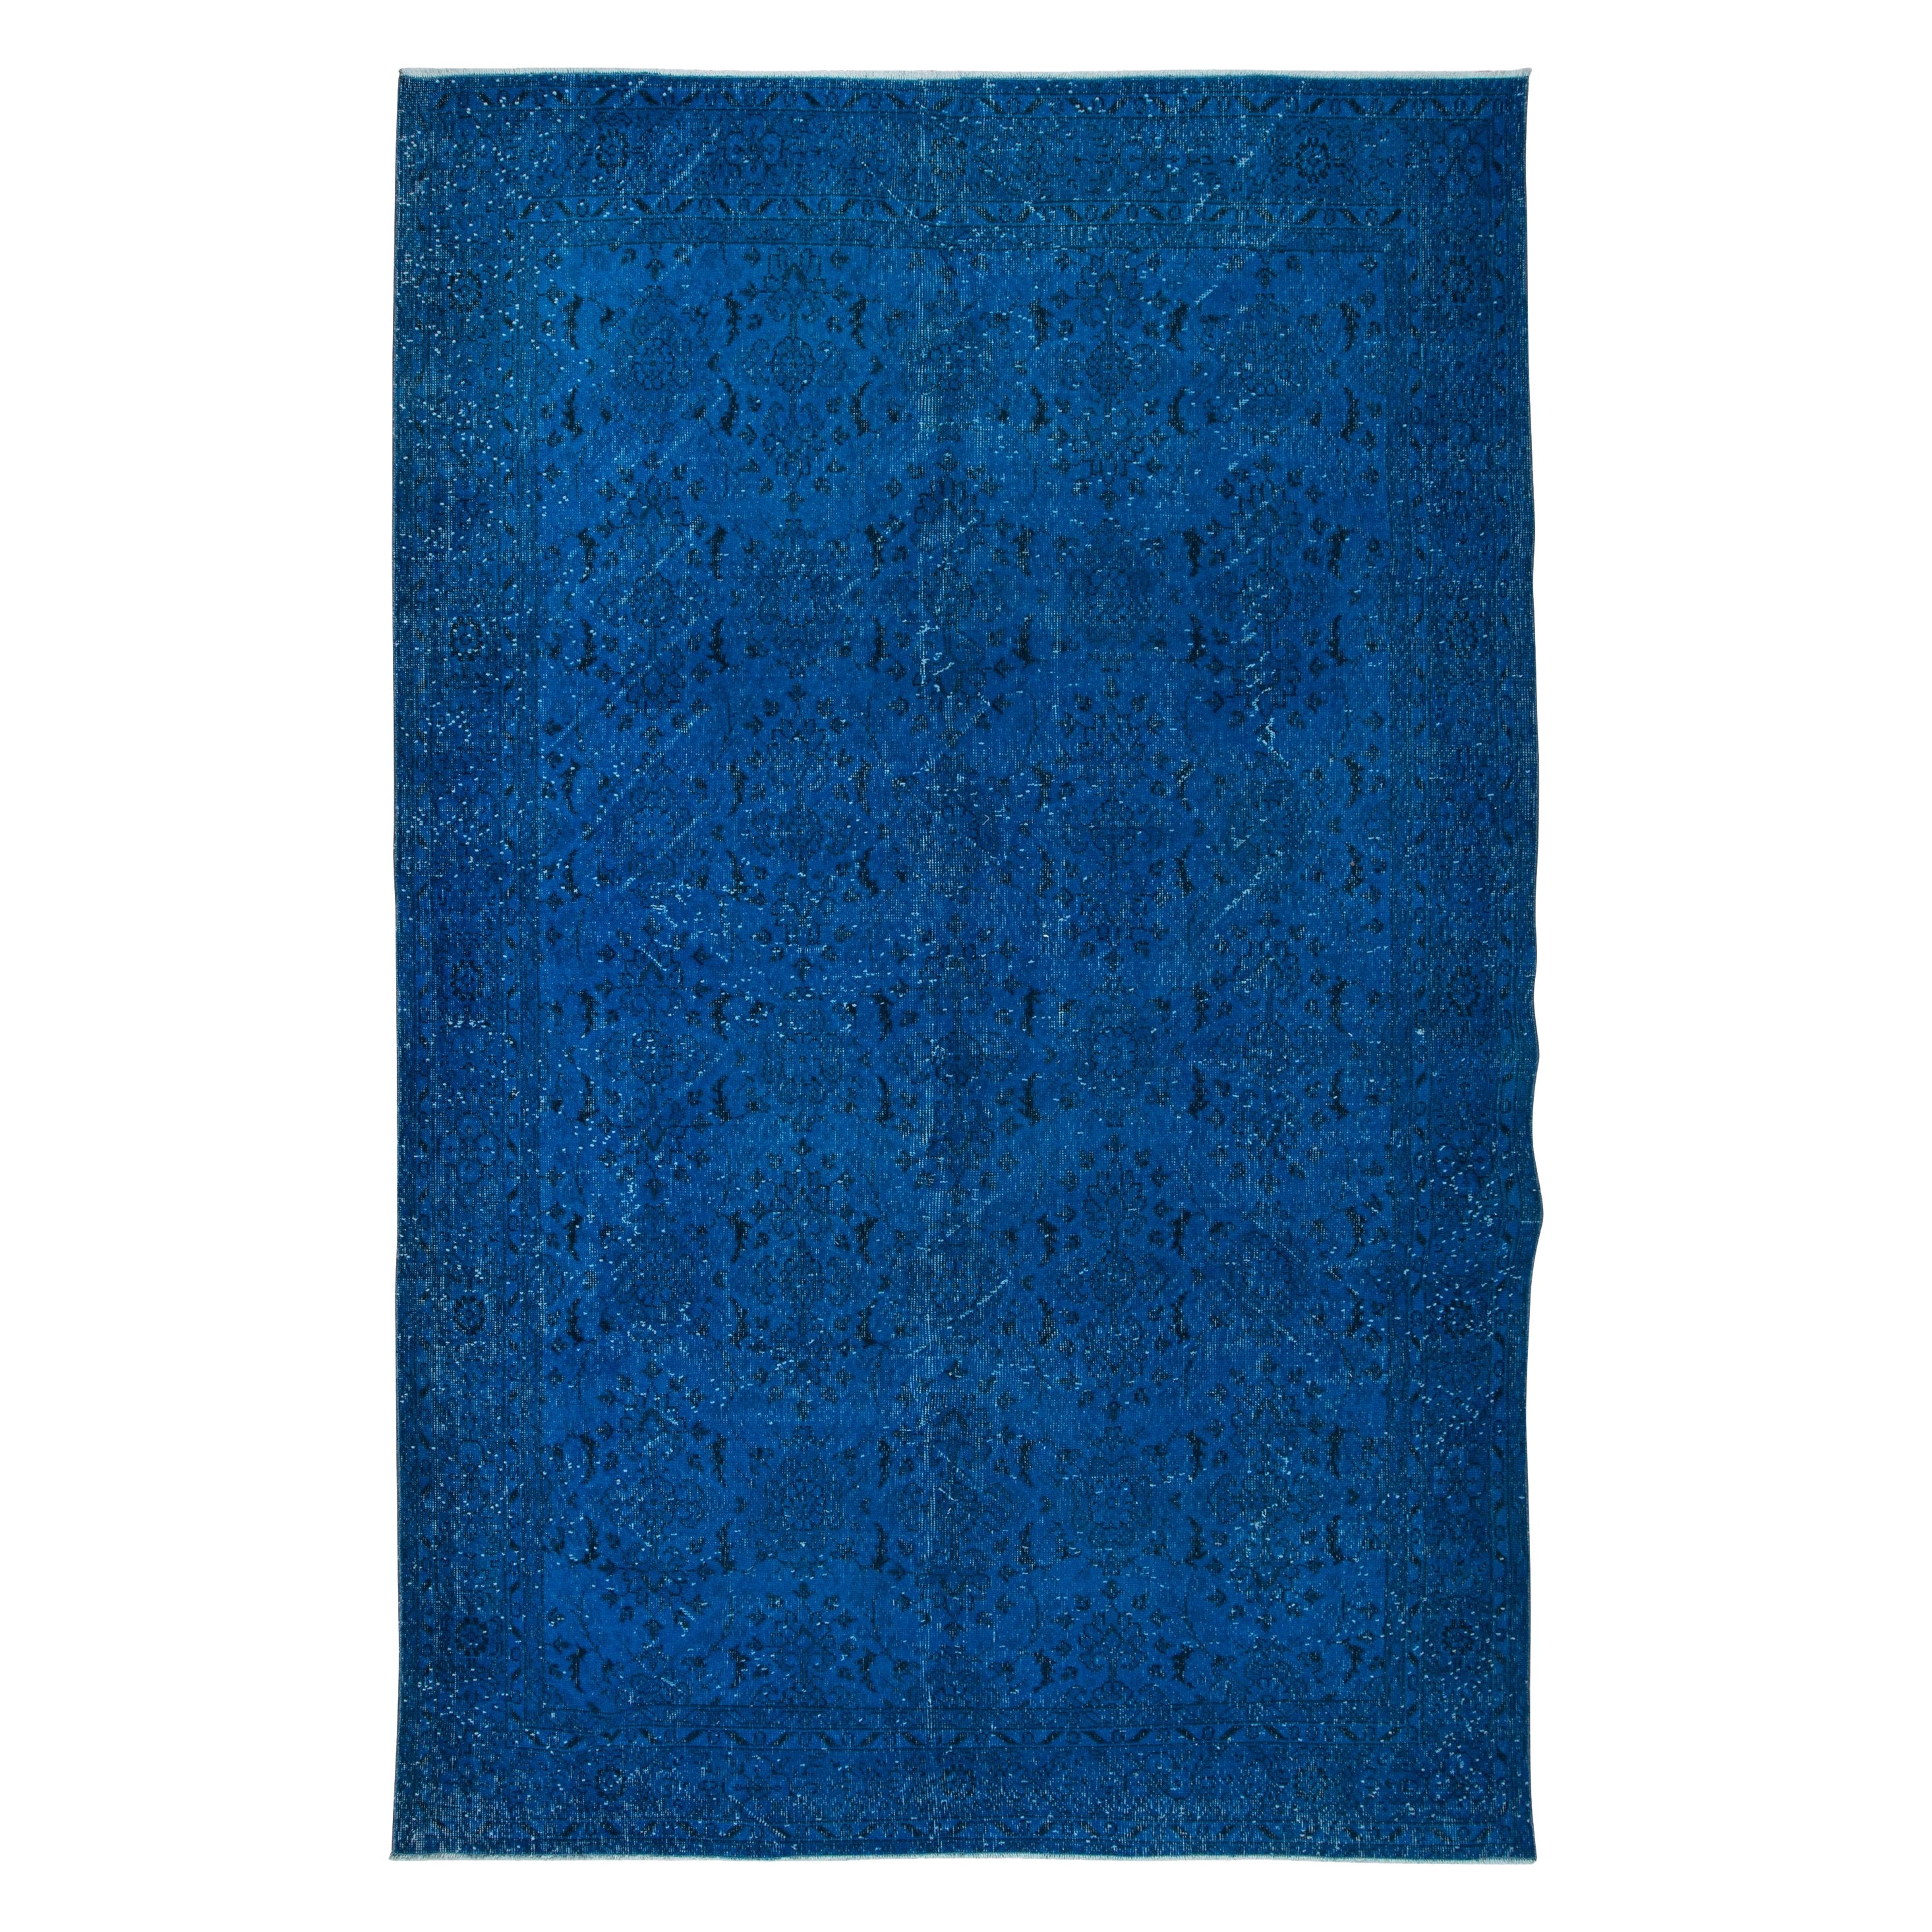 6.6x10.2 Ft Moderner blauer handgefertigter Teppich, türkischer Teppich, Bodenbezug aus Wolle, modern